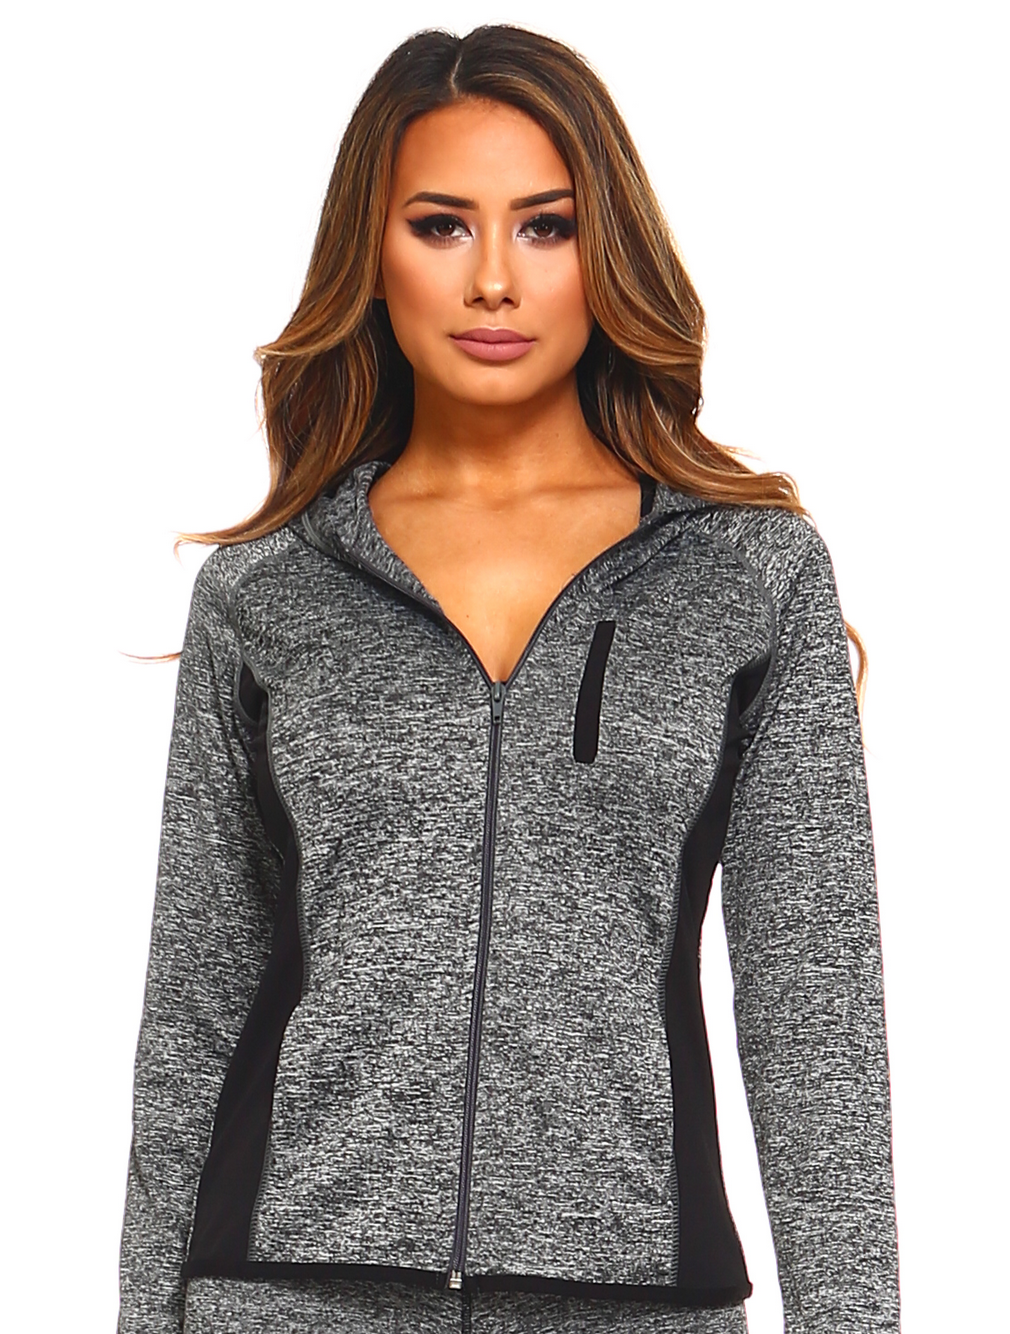 Women's Activewear Jacket, Full Zip Up Hoodie, Long Sleeve Workout Wear, Marled Knit Design - Wear Sierra